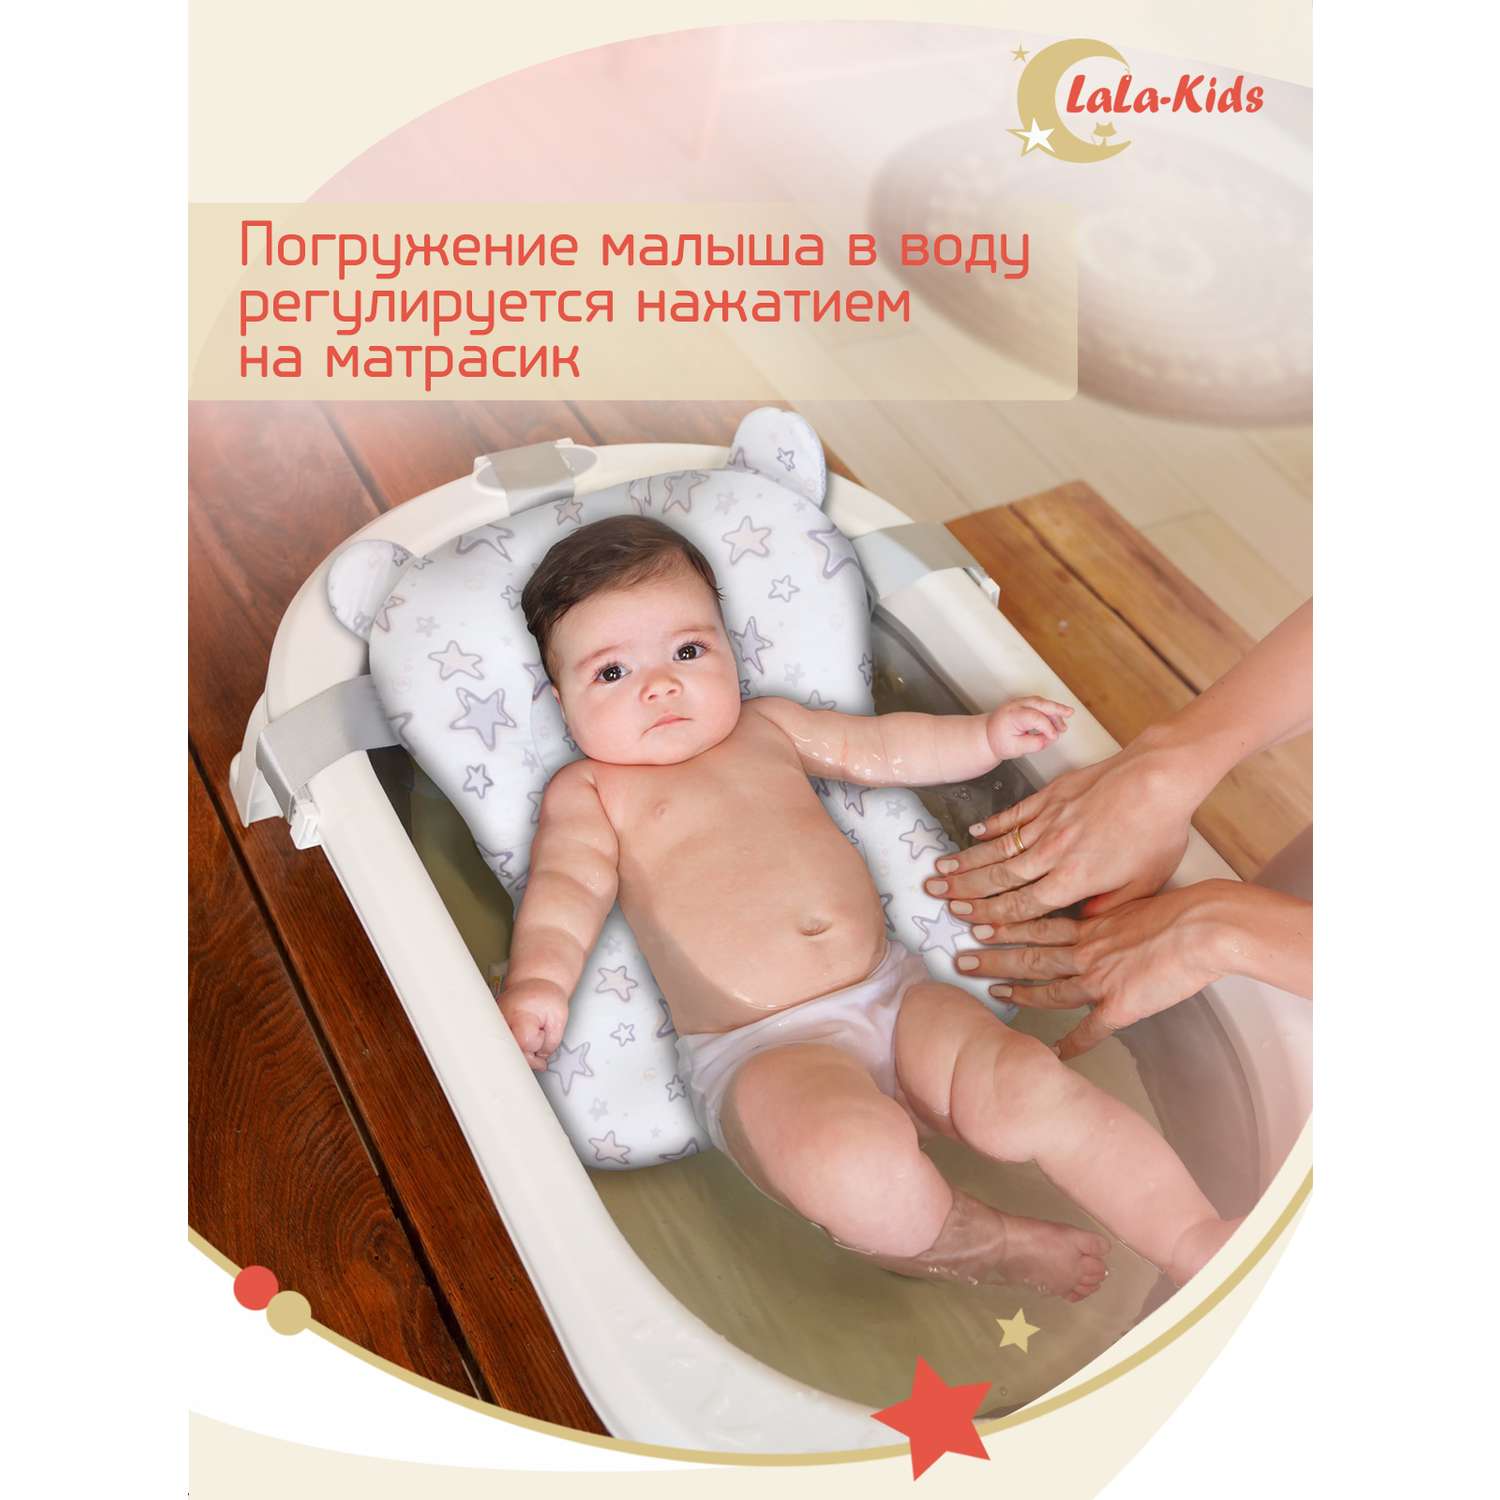 Складная ванночка LaLa-Kids для купания новорожденных с матрасиком в комплекте - фото 18